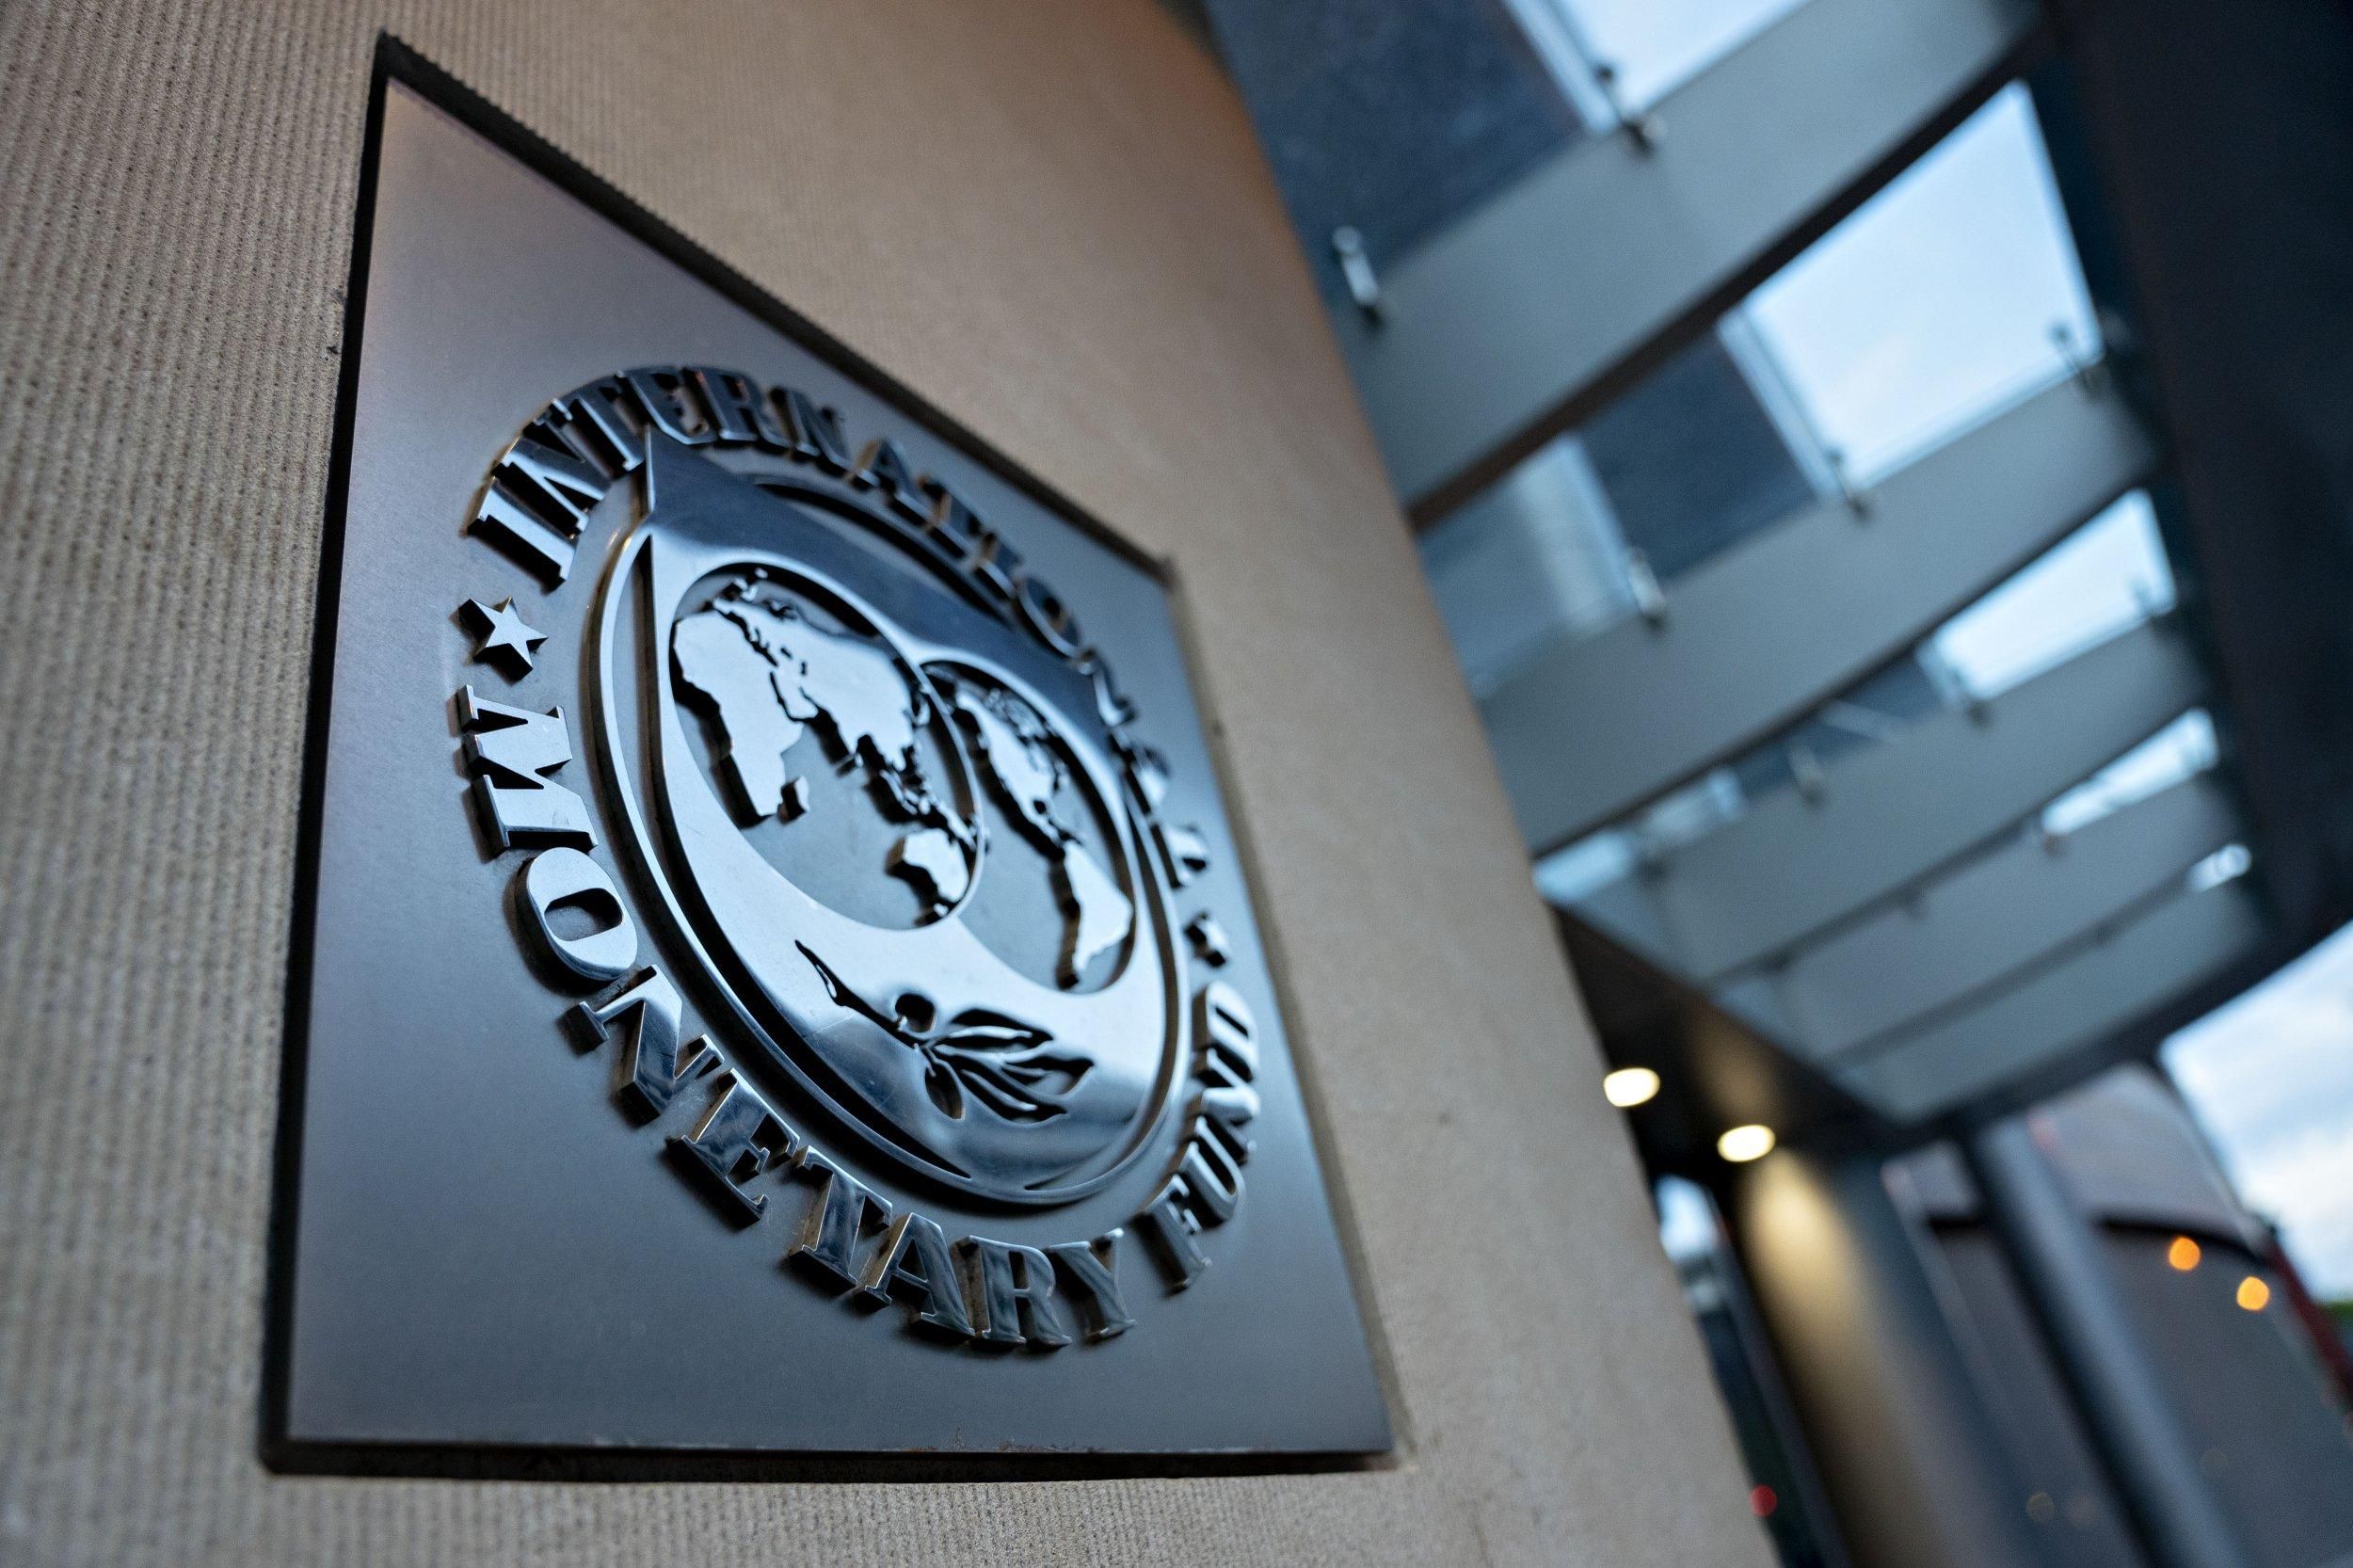 Инфляция в мире набирает обороты: МВФ обнародовал новый прогноз по росту цен в 2022 году